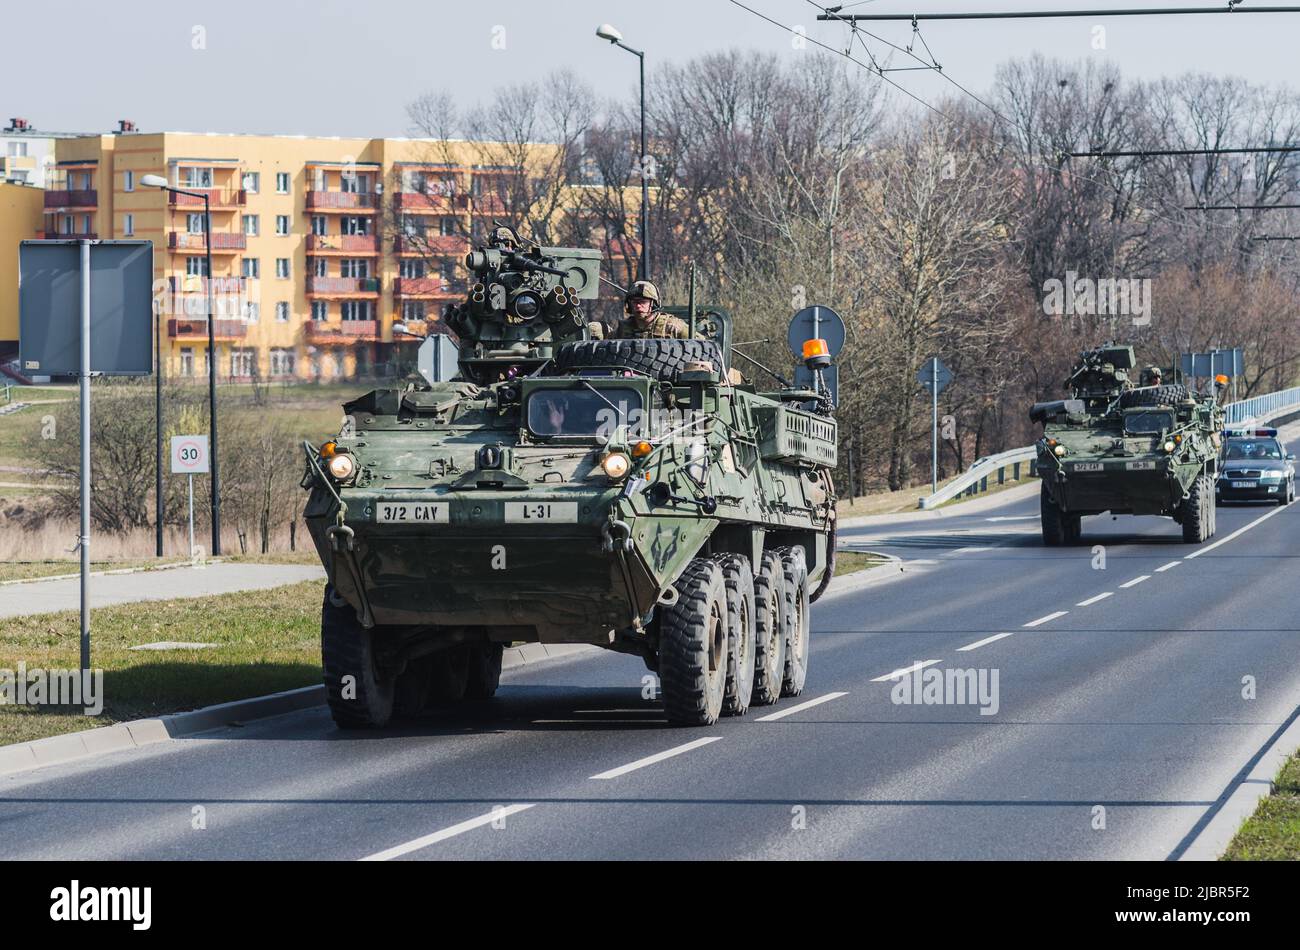 Lublino, Polonia - 25 marzo 2015: Veicolo dell'esercito degli Stati Uniti (vettore del personale Armored) Stryker passando le strade della città Foto Stock